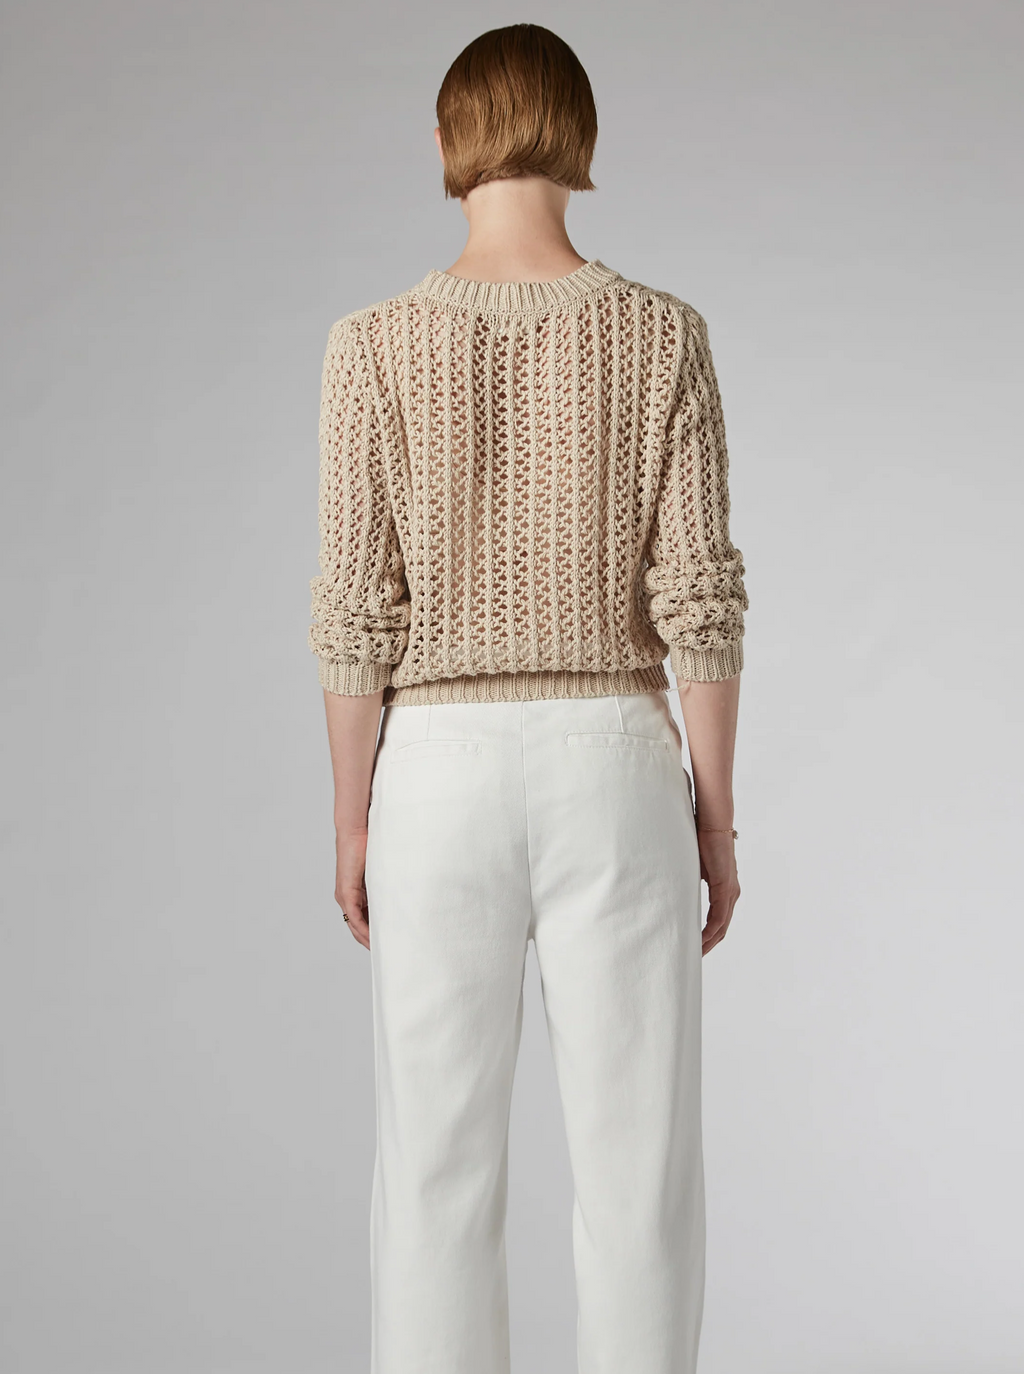 DRICOPER - Keely Crochet Knit Sweater - Beige